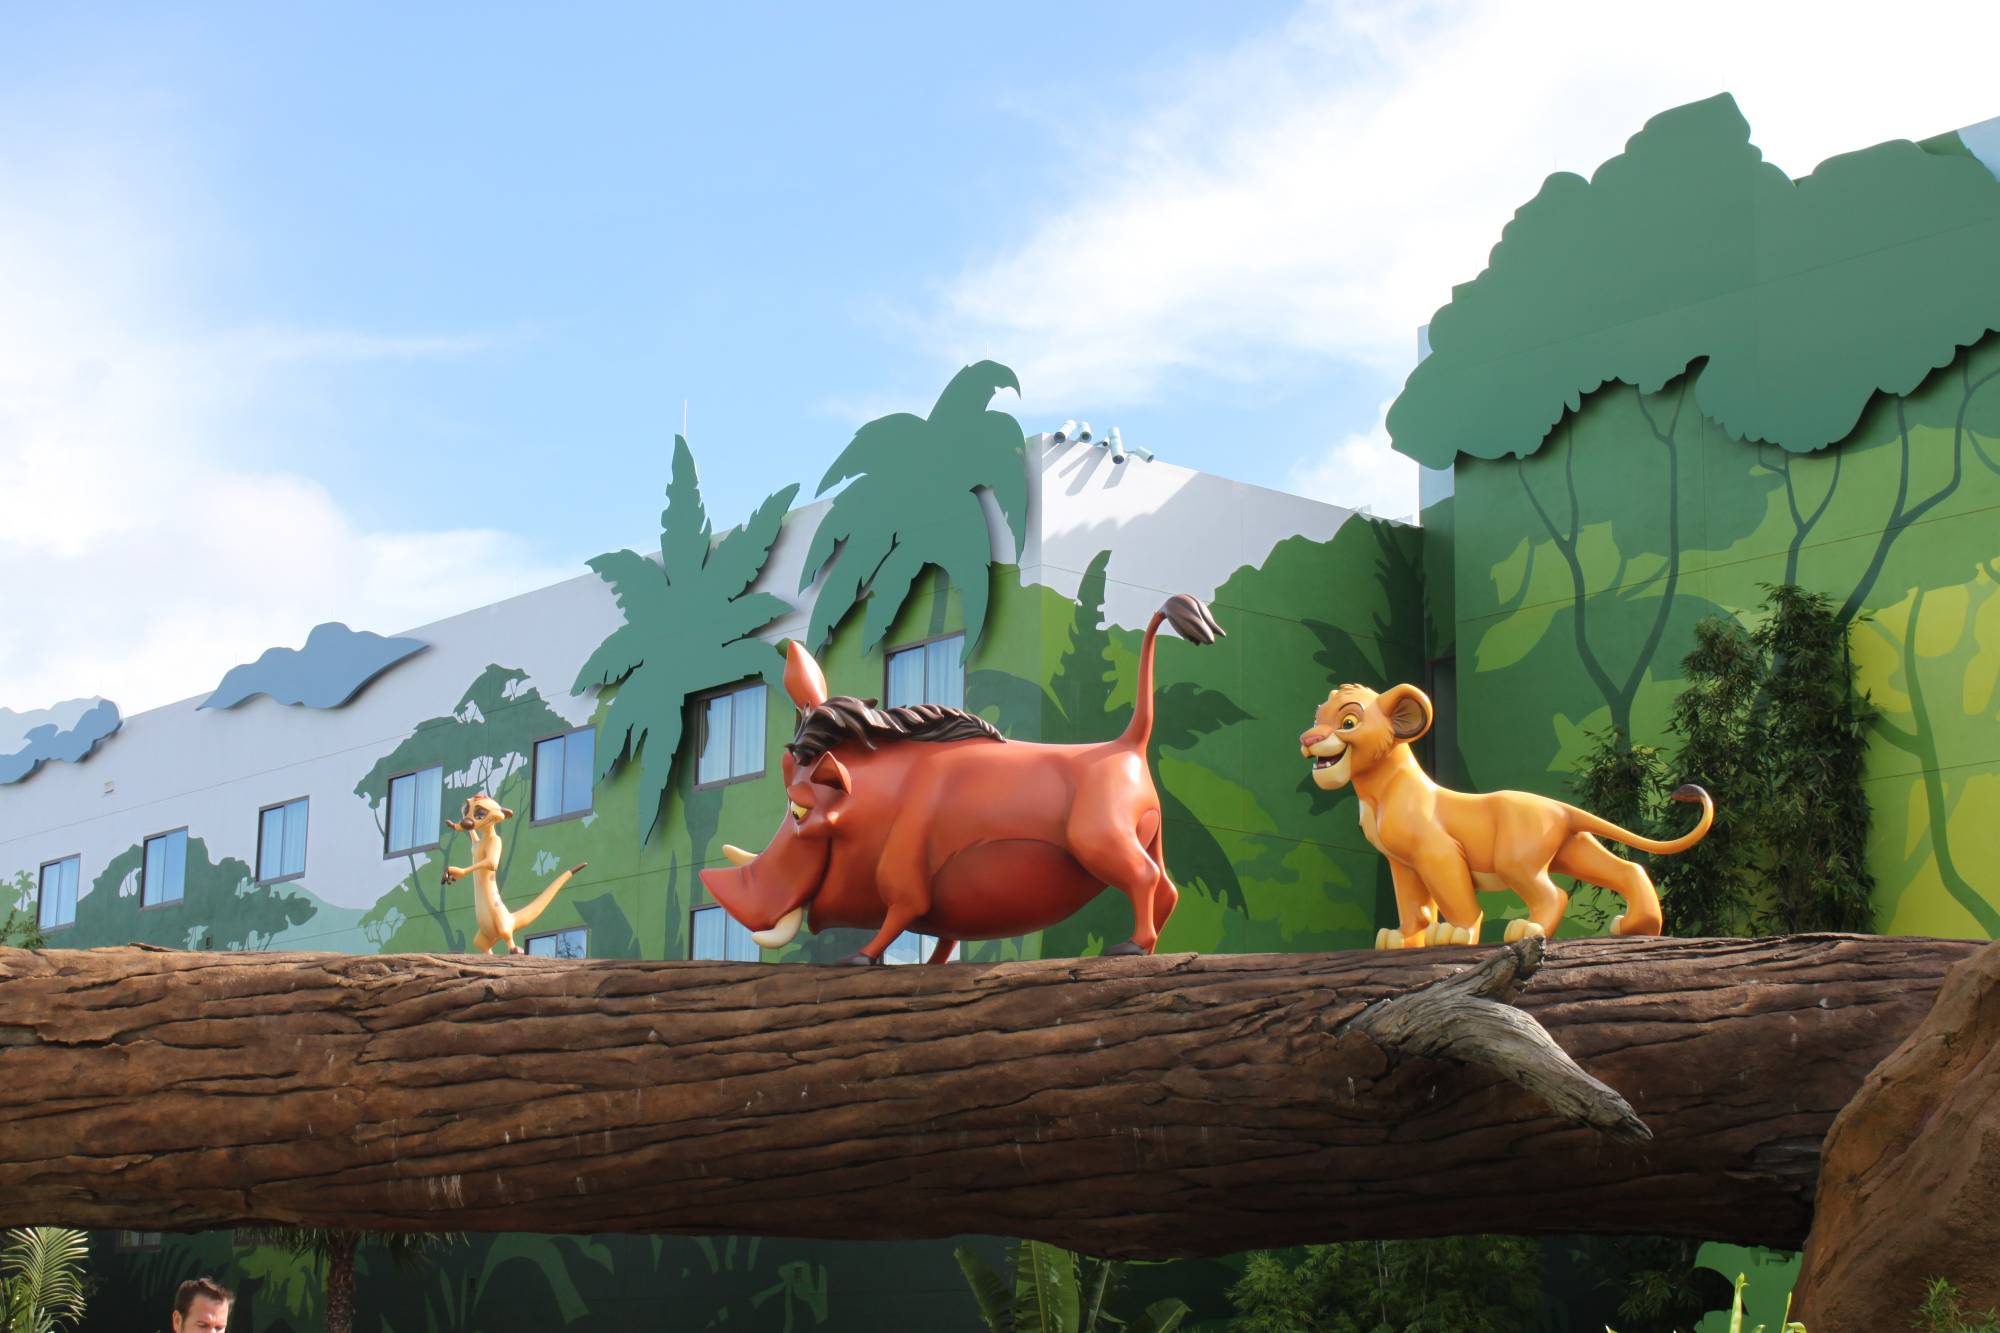 Art of Animation - Lion King Section Timon, Pumbaa, and Simba!